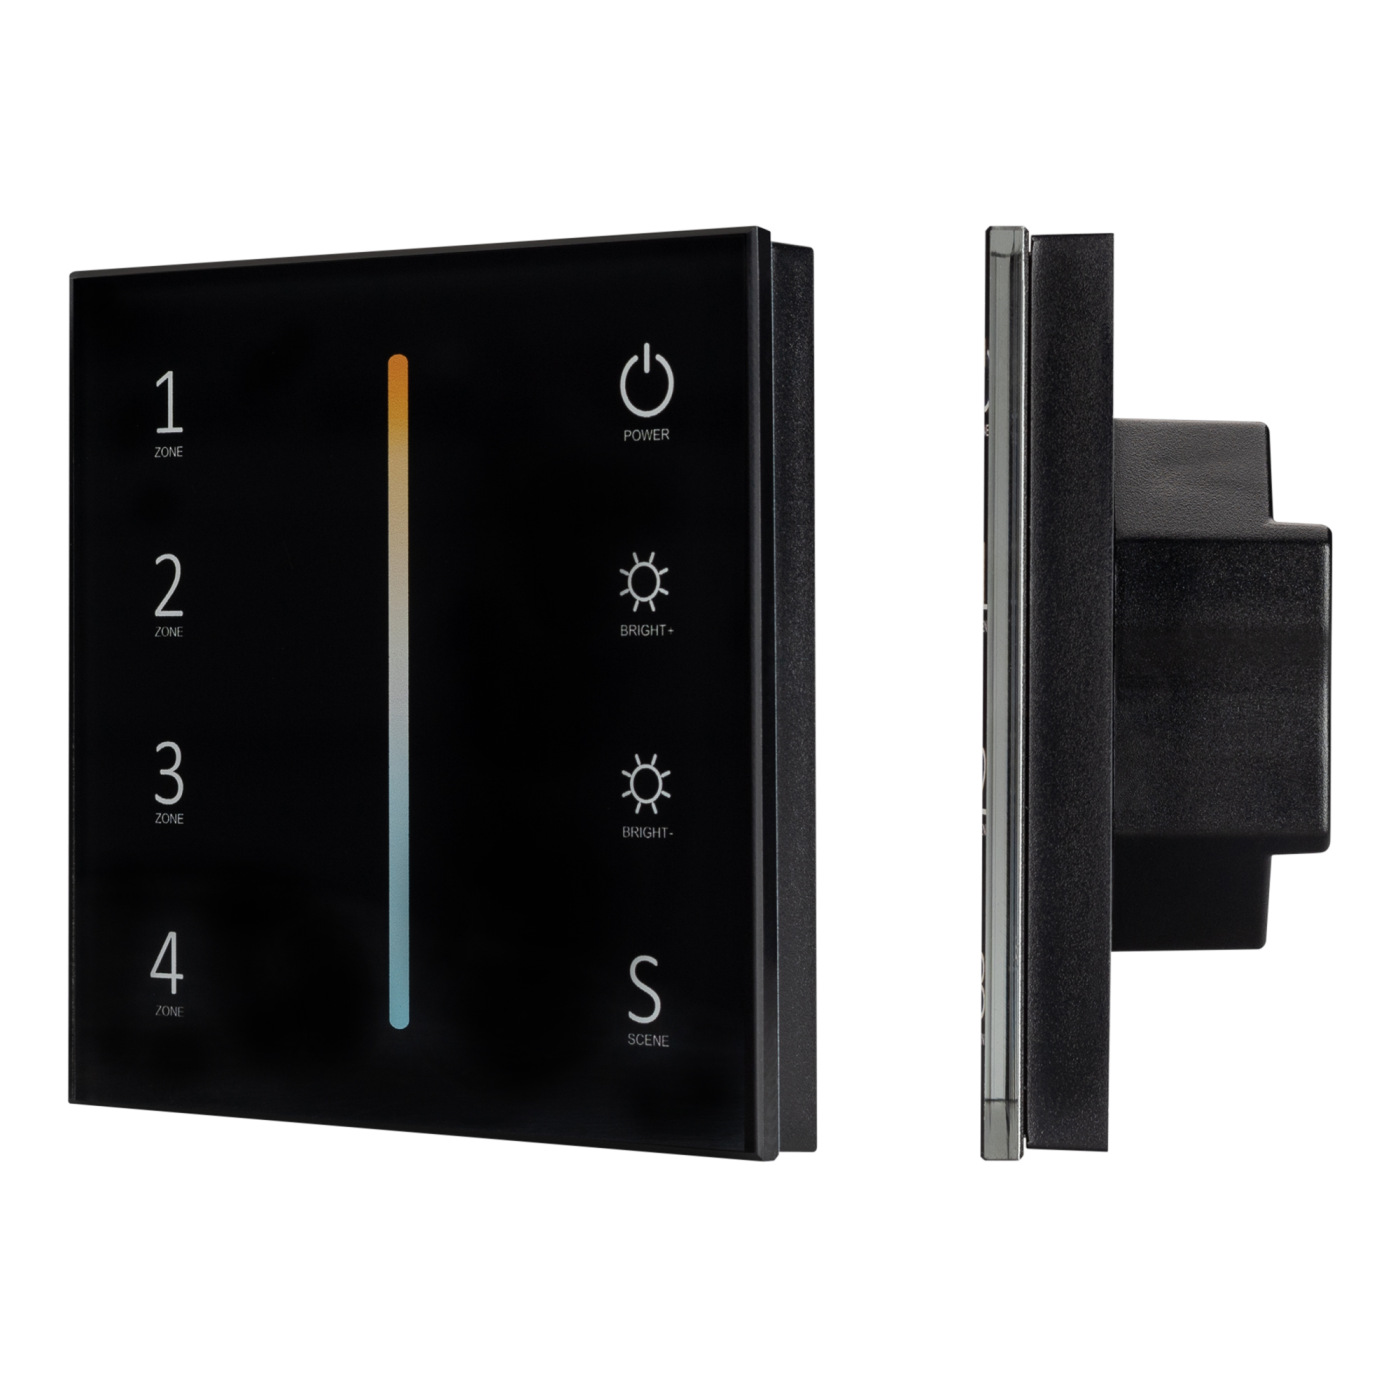 Панель Sens SMART-P43-MIX Black (230V, 4 зоны, 2.4G) (Arlight, IP20 Пластик, 5 лет) жаровня гранит black induction pro 4 л стеклянная крышка антипригарное покрытие индукция чёрный